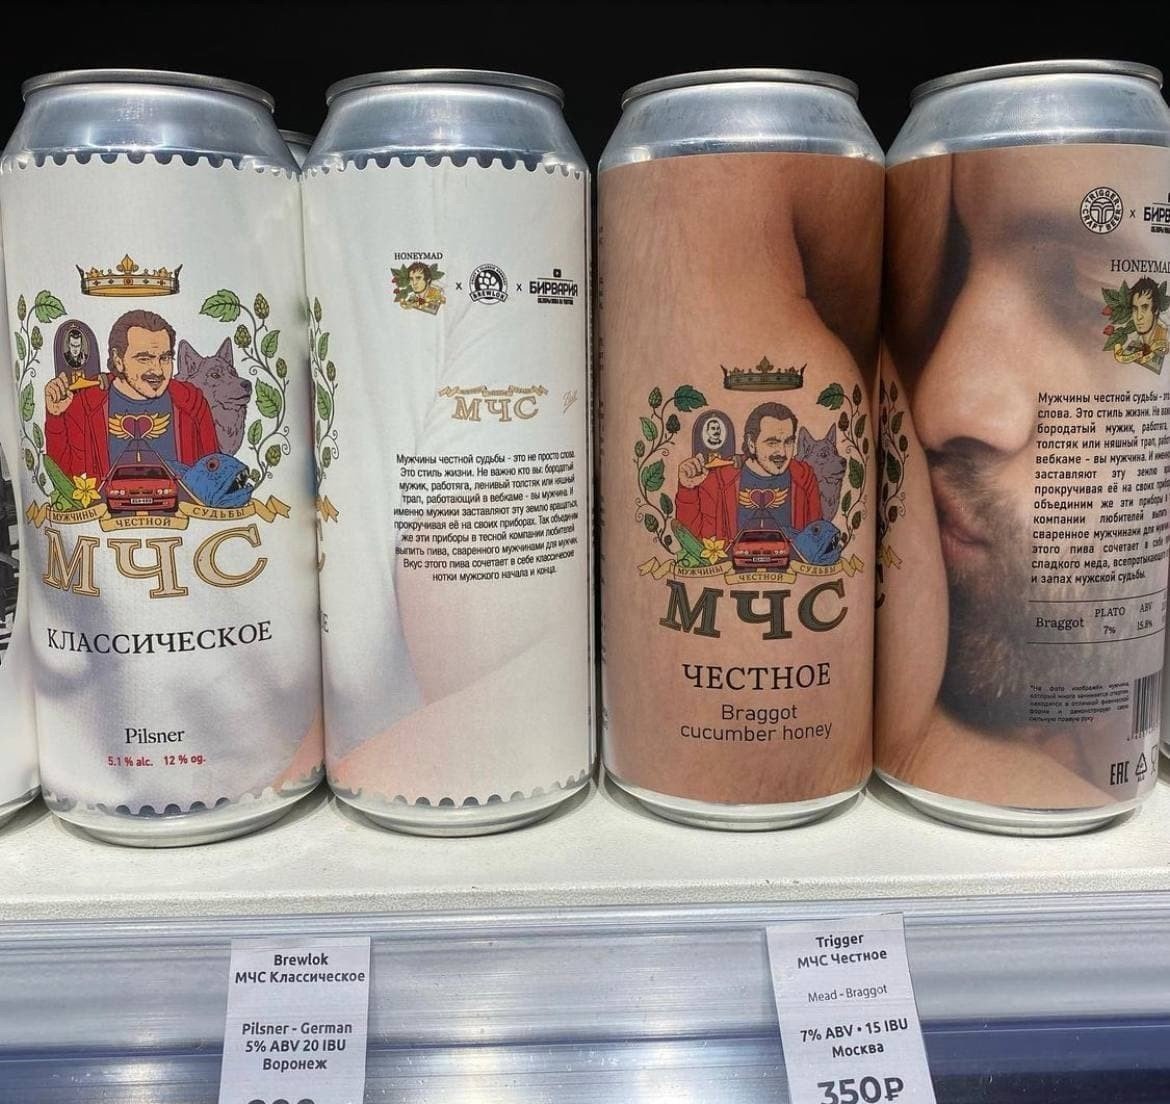 Пиво от Мэддисона появилось в продаже в Москве и СанктПетербурге